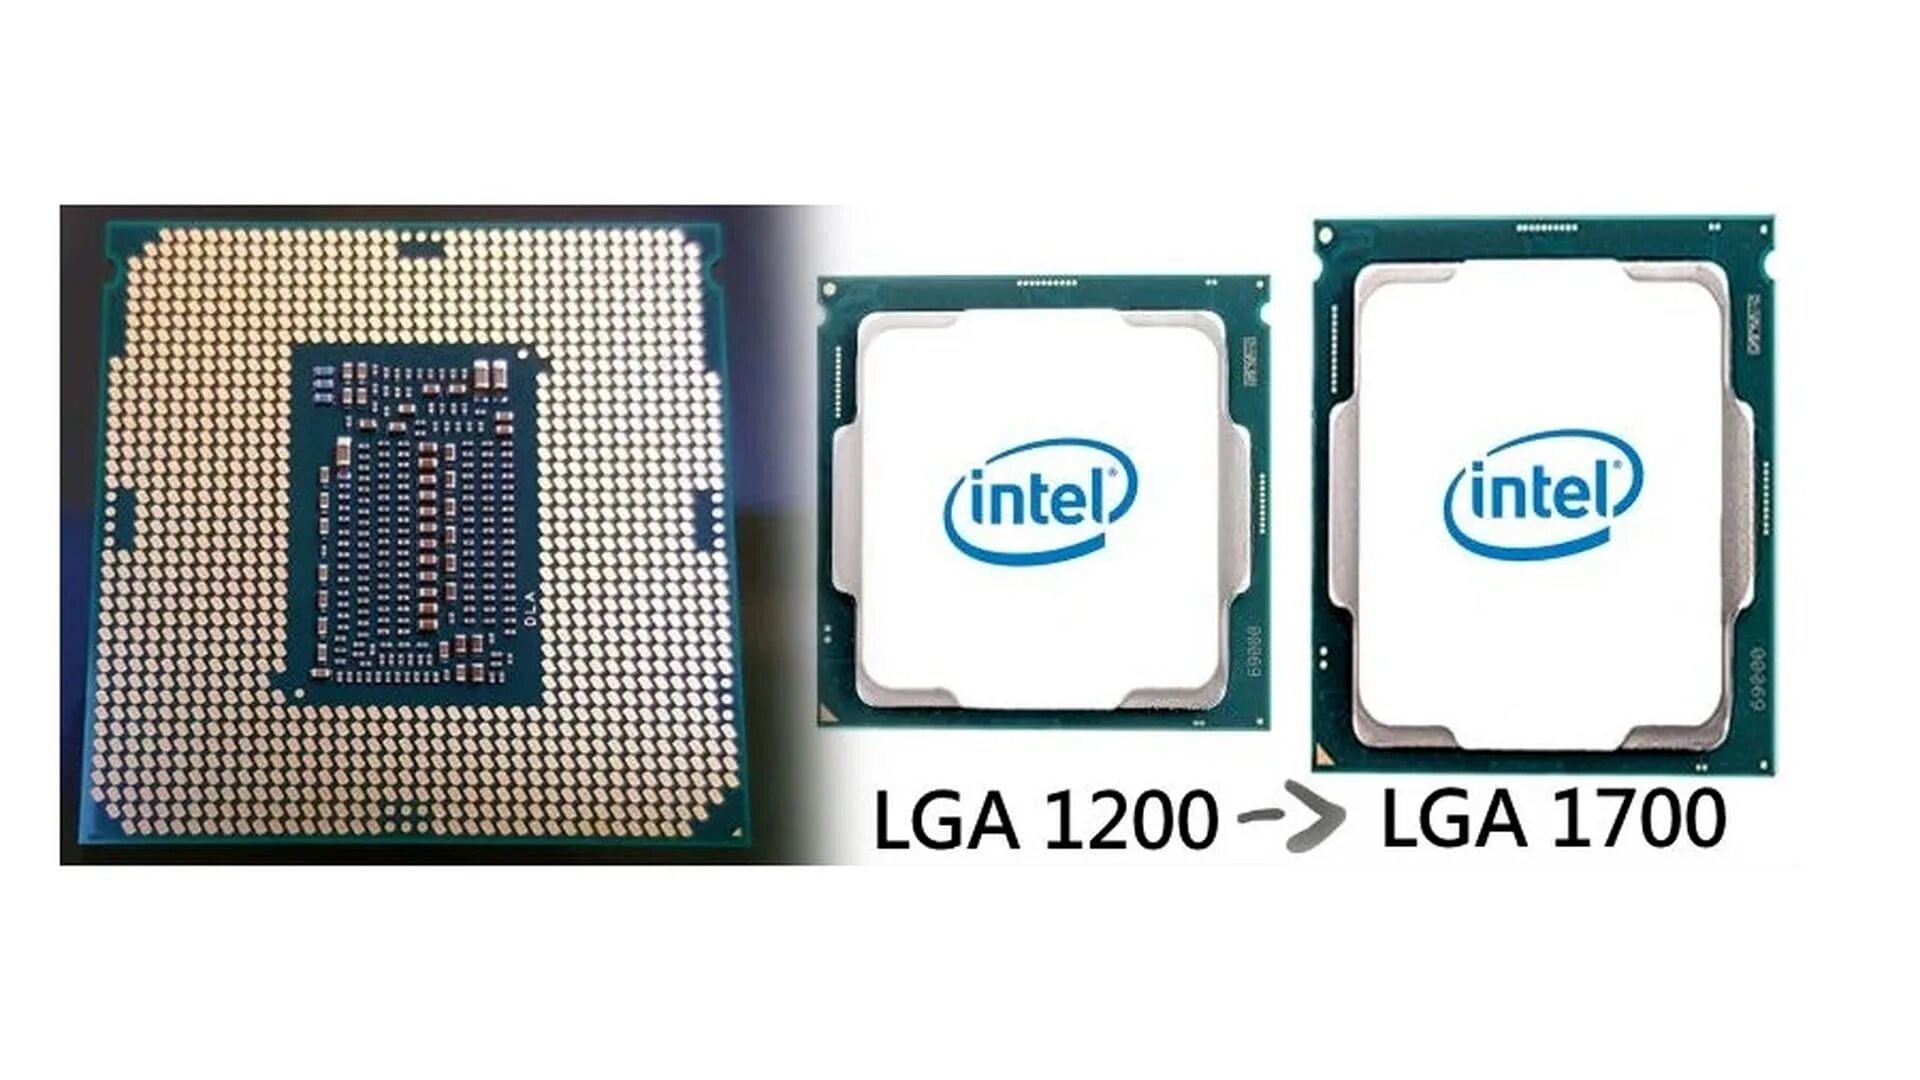 Купить процессор 1700. Сокет Интел 1700. LGA 1700 процессоры Intel. LGA 1700 vs LGA 1200 процессор. Сокет Интел лга 1700.